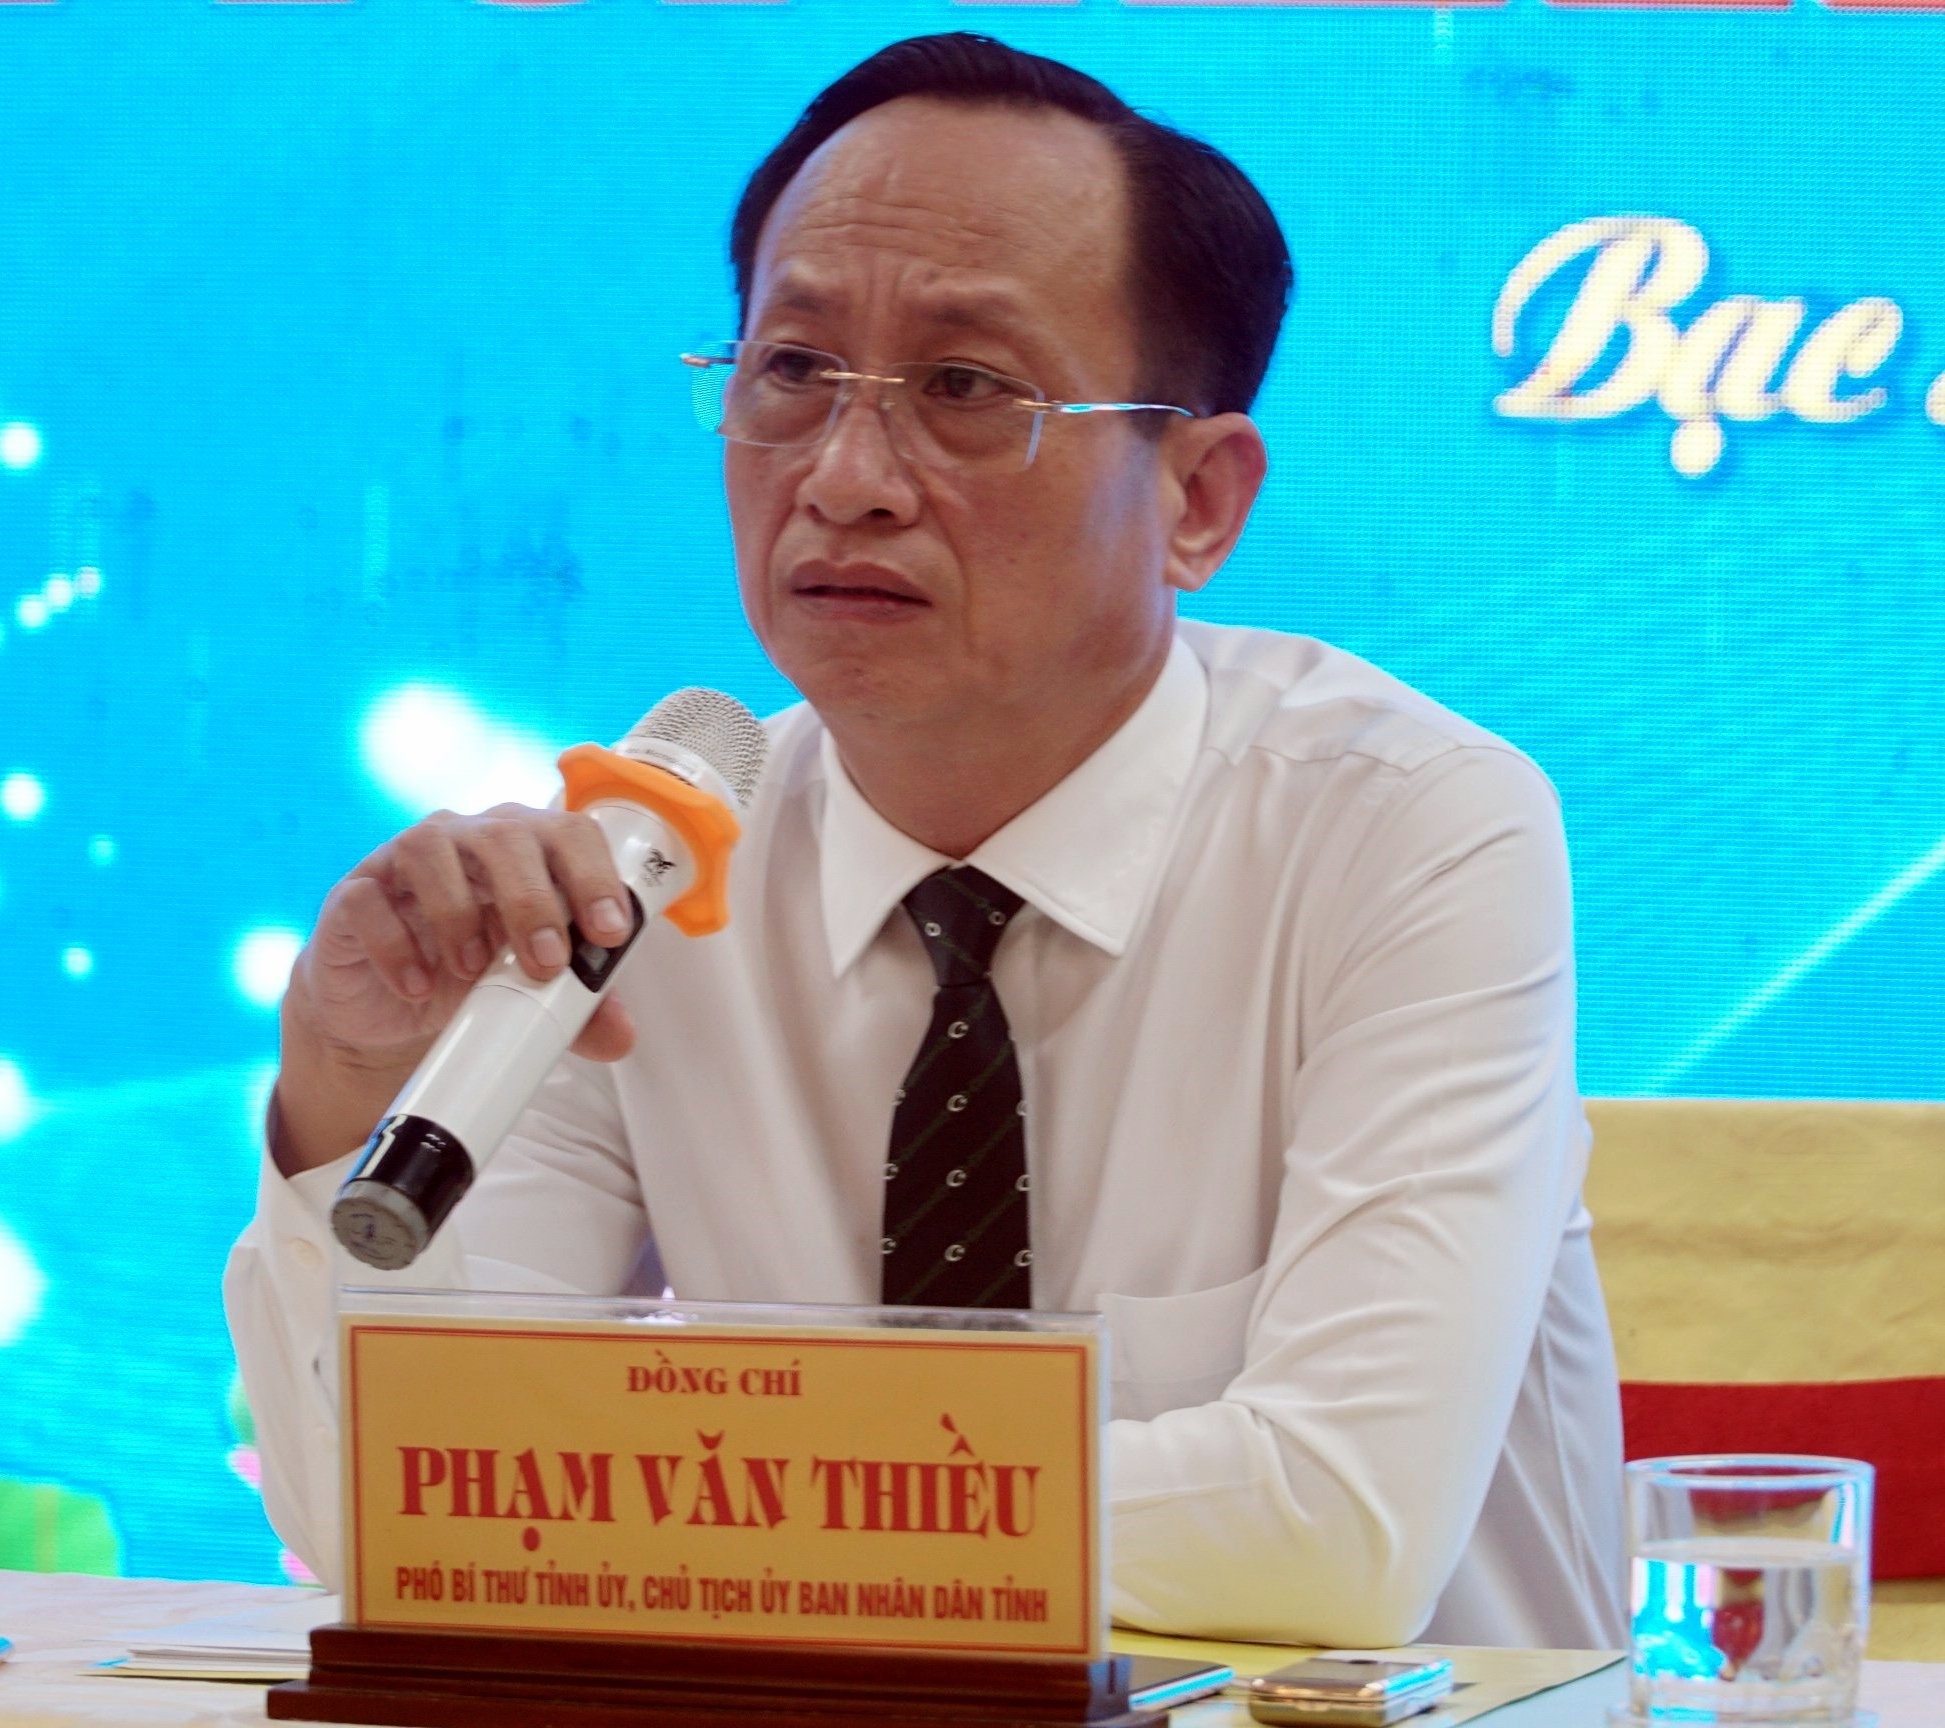 Chủ tịch UBND tỉnh Bạc Liêu Phạm Văn Thiều tâm tư trước việc tỉnh này mỗi năm có 60.000 người bỏ xứ ra đi tìm việc làm. Ảnh: Nhật Hồ